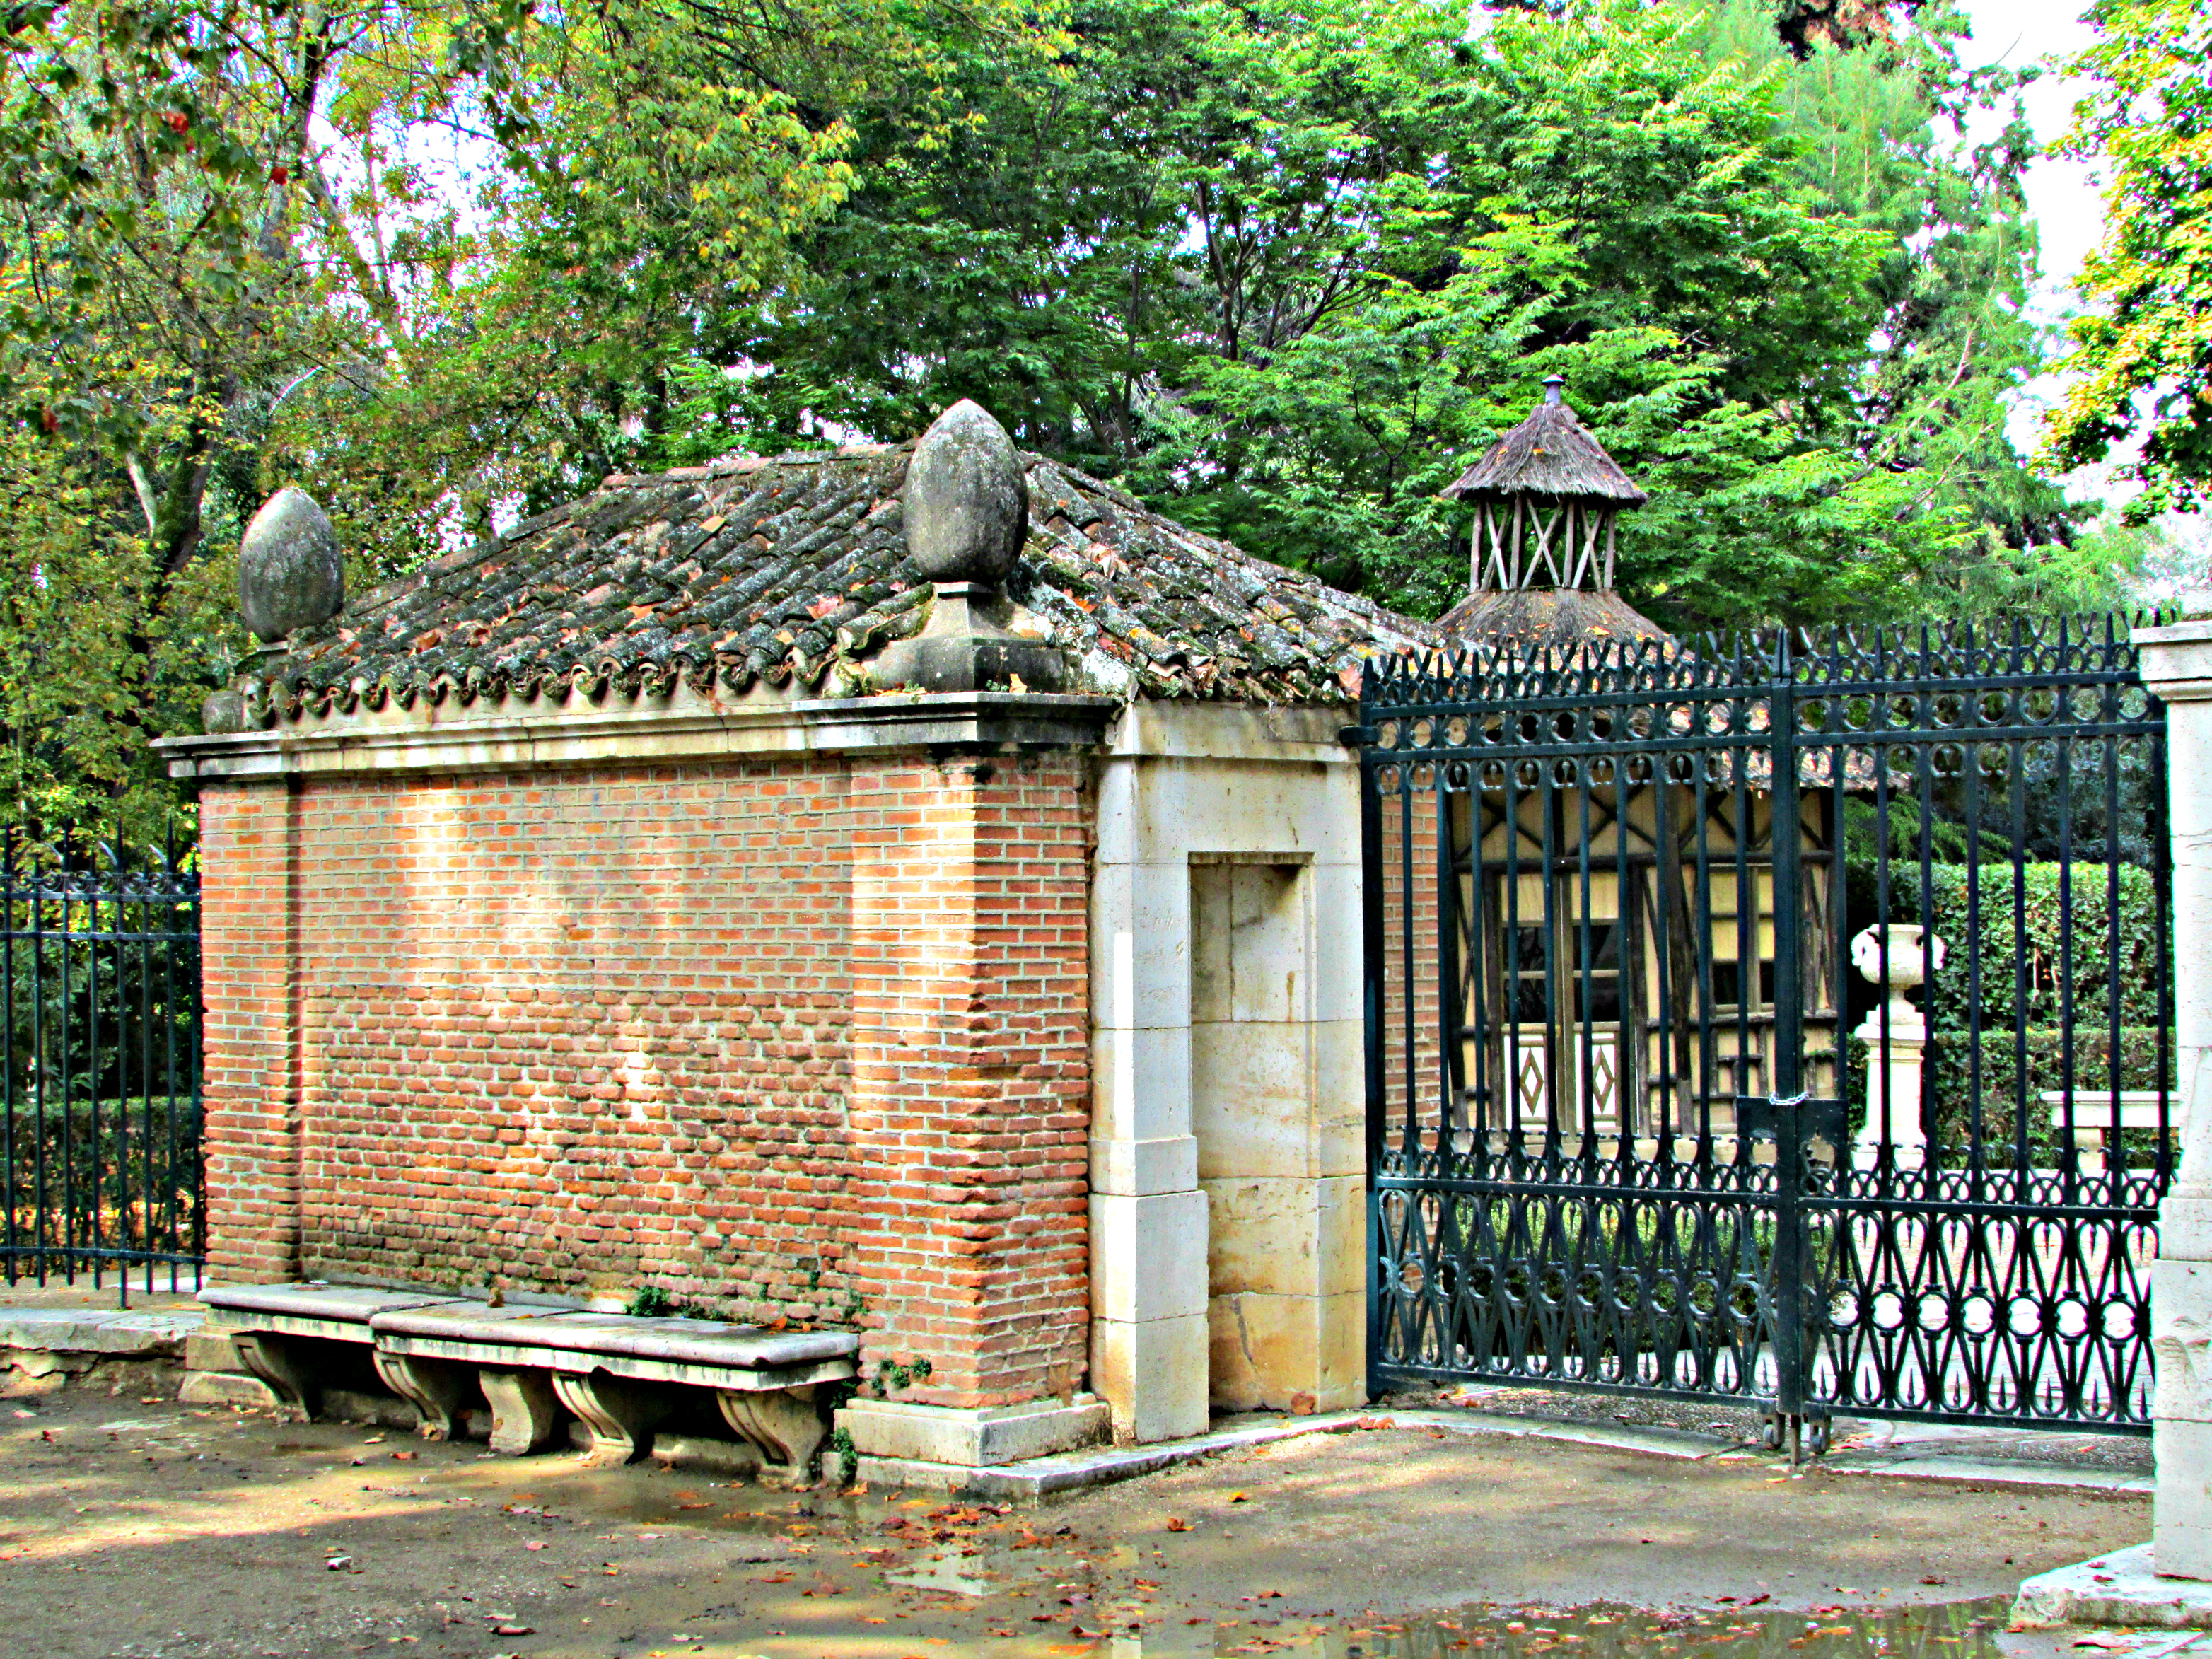 Guard house at Princes Garden Aranjuez